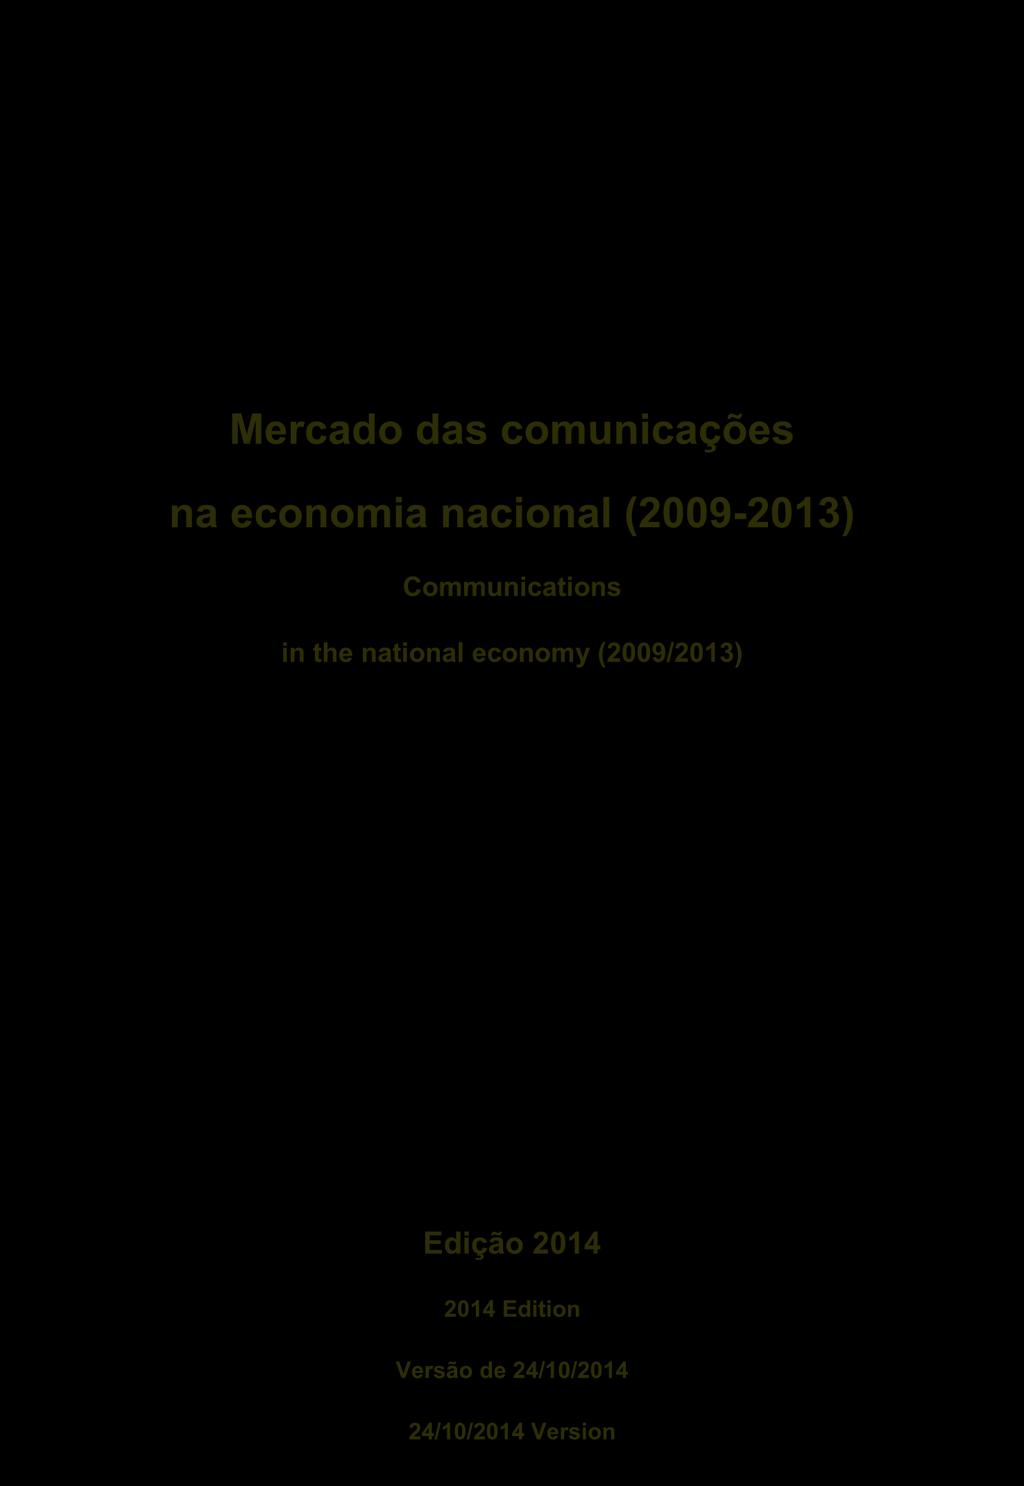 national economy (2009/2013) Edição 2014